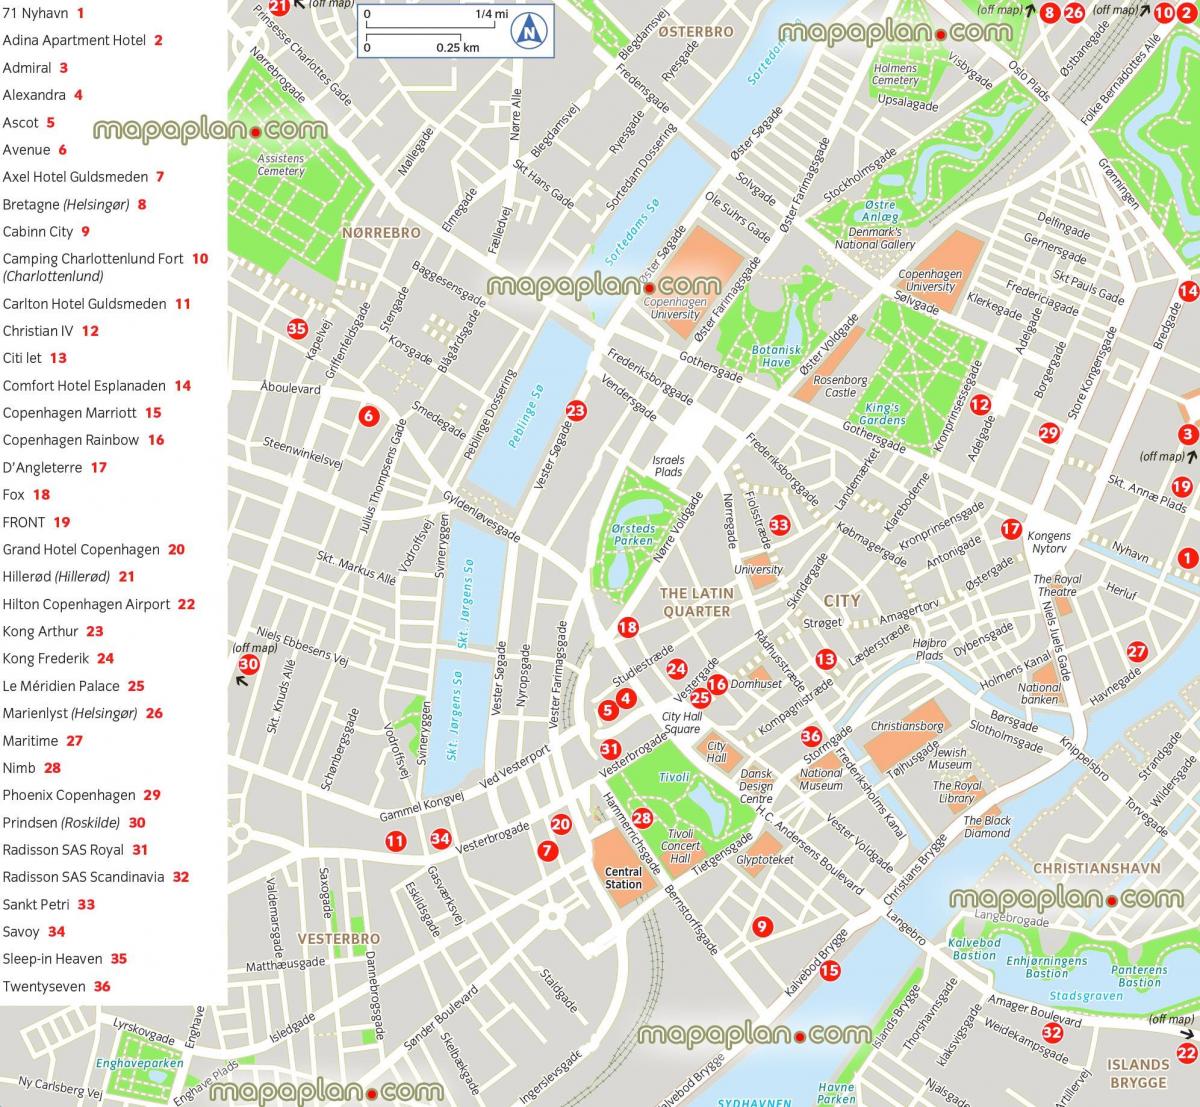 Mappa delle attrazioni di Copenaghen